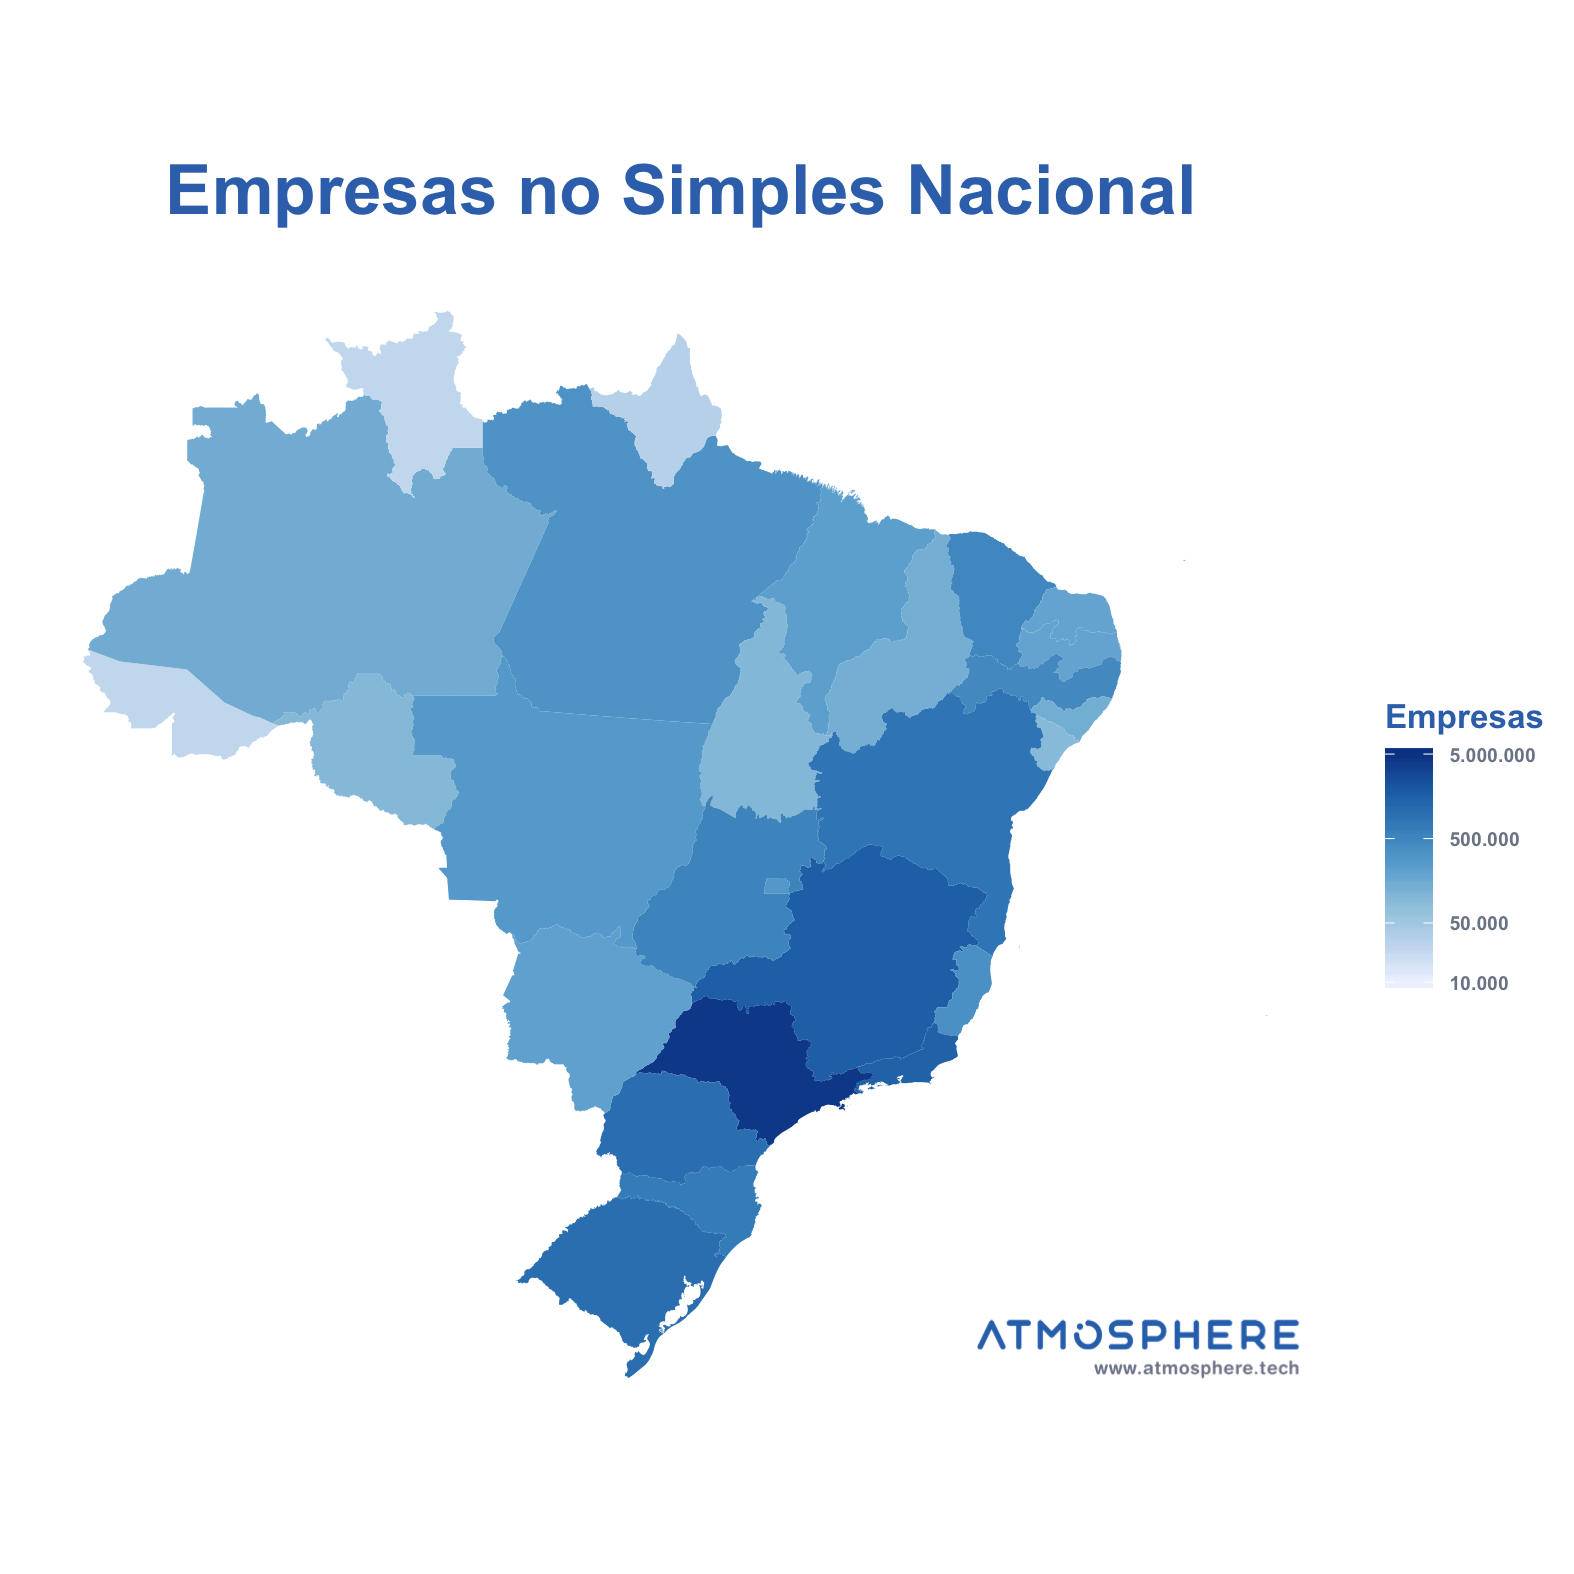 Atmosphere Empresas no Simples Nacional por Estado no Brasil